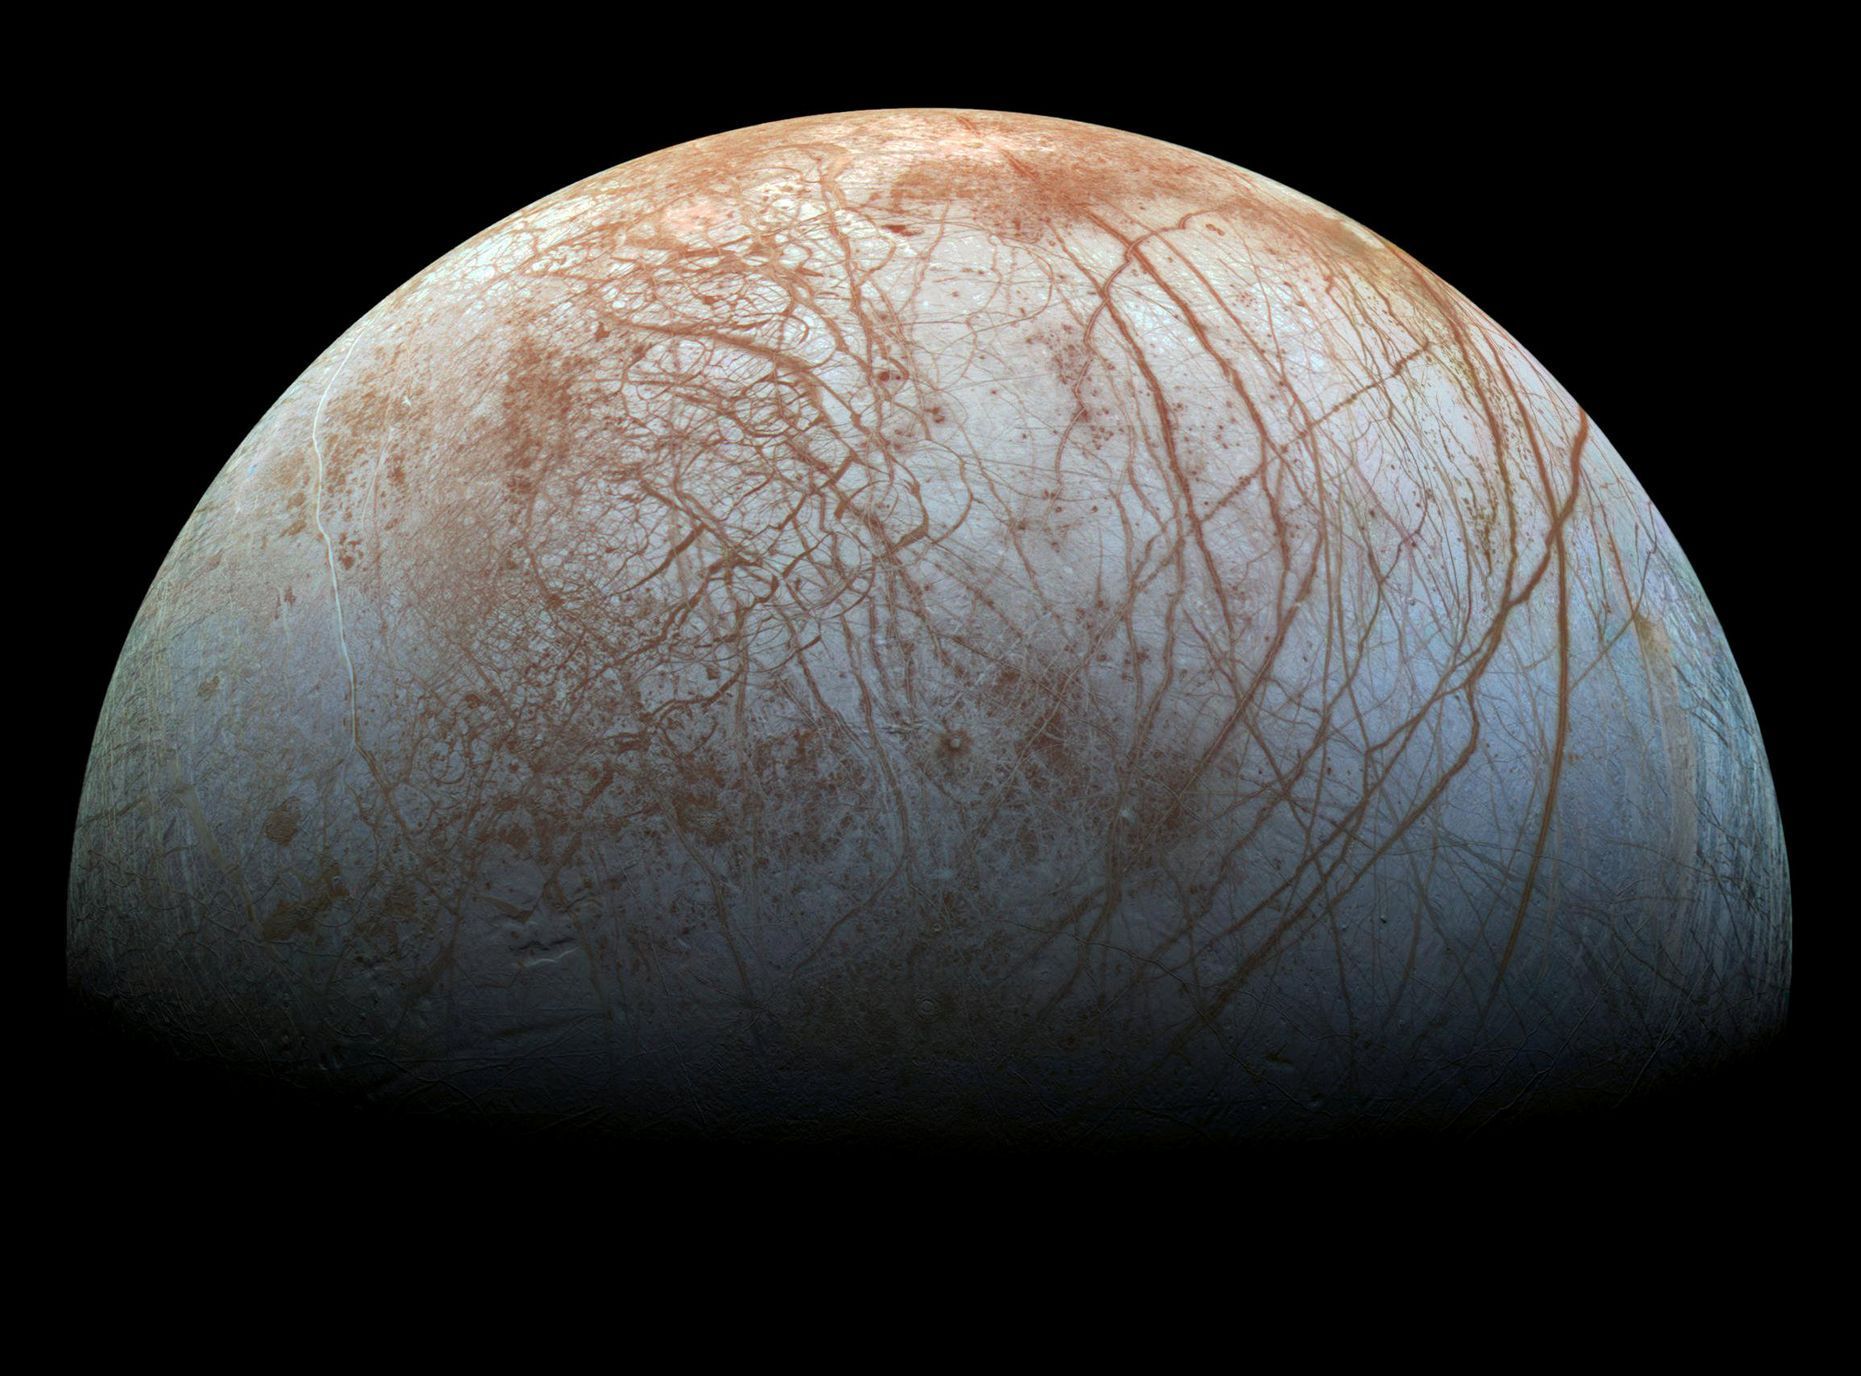 Měsíc Europa, který obíhá kolem planety Jupiter